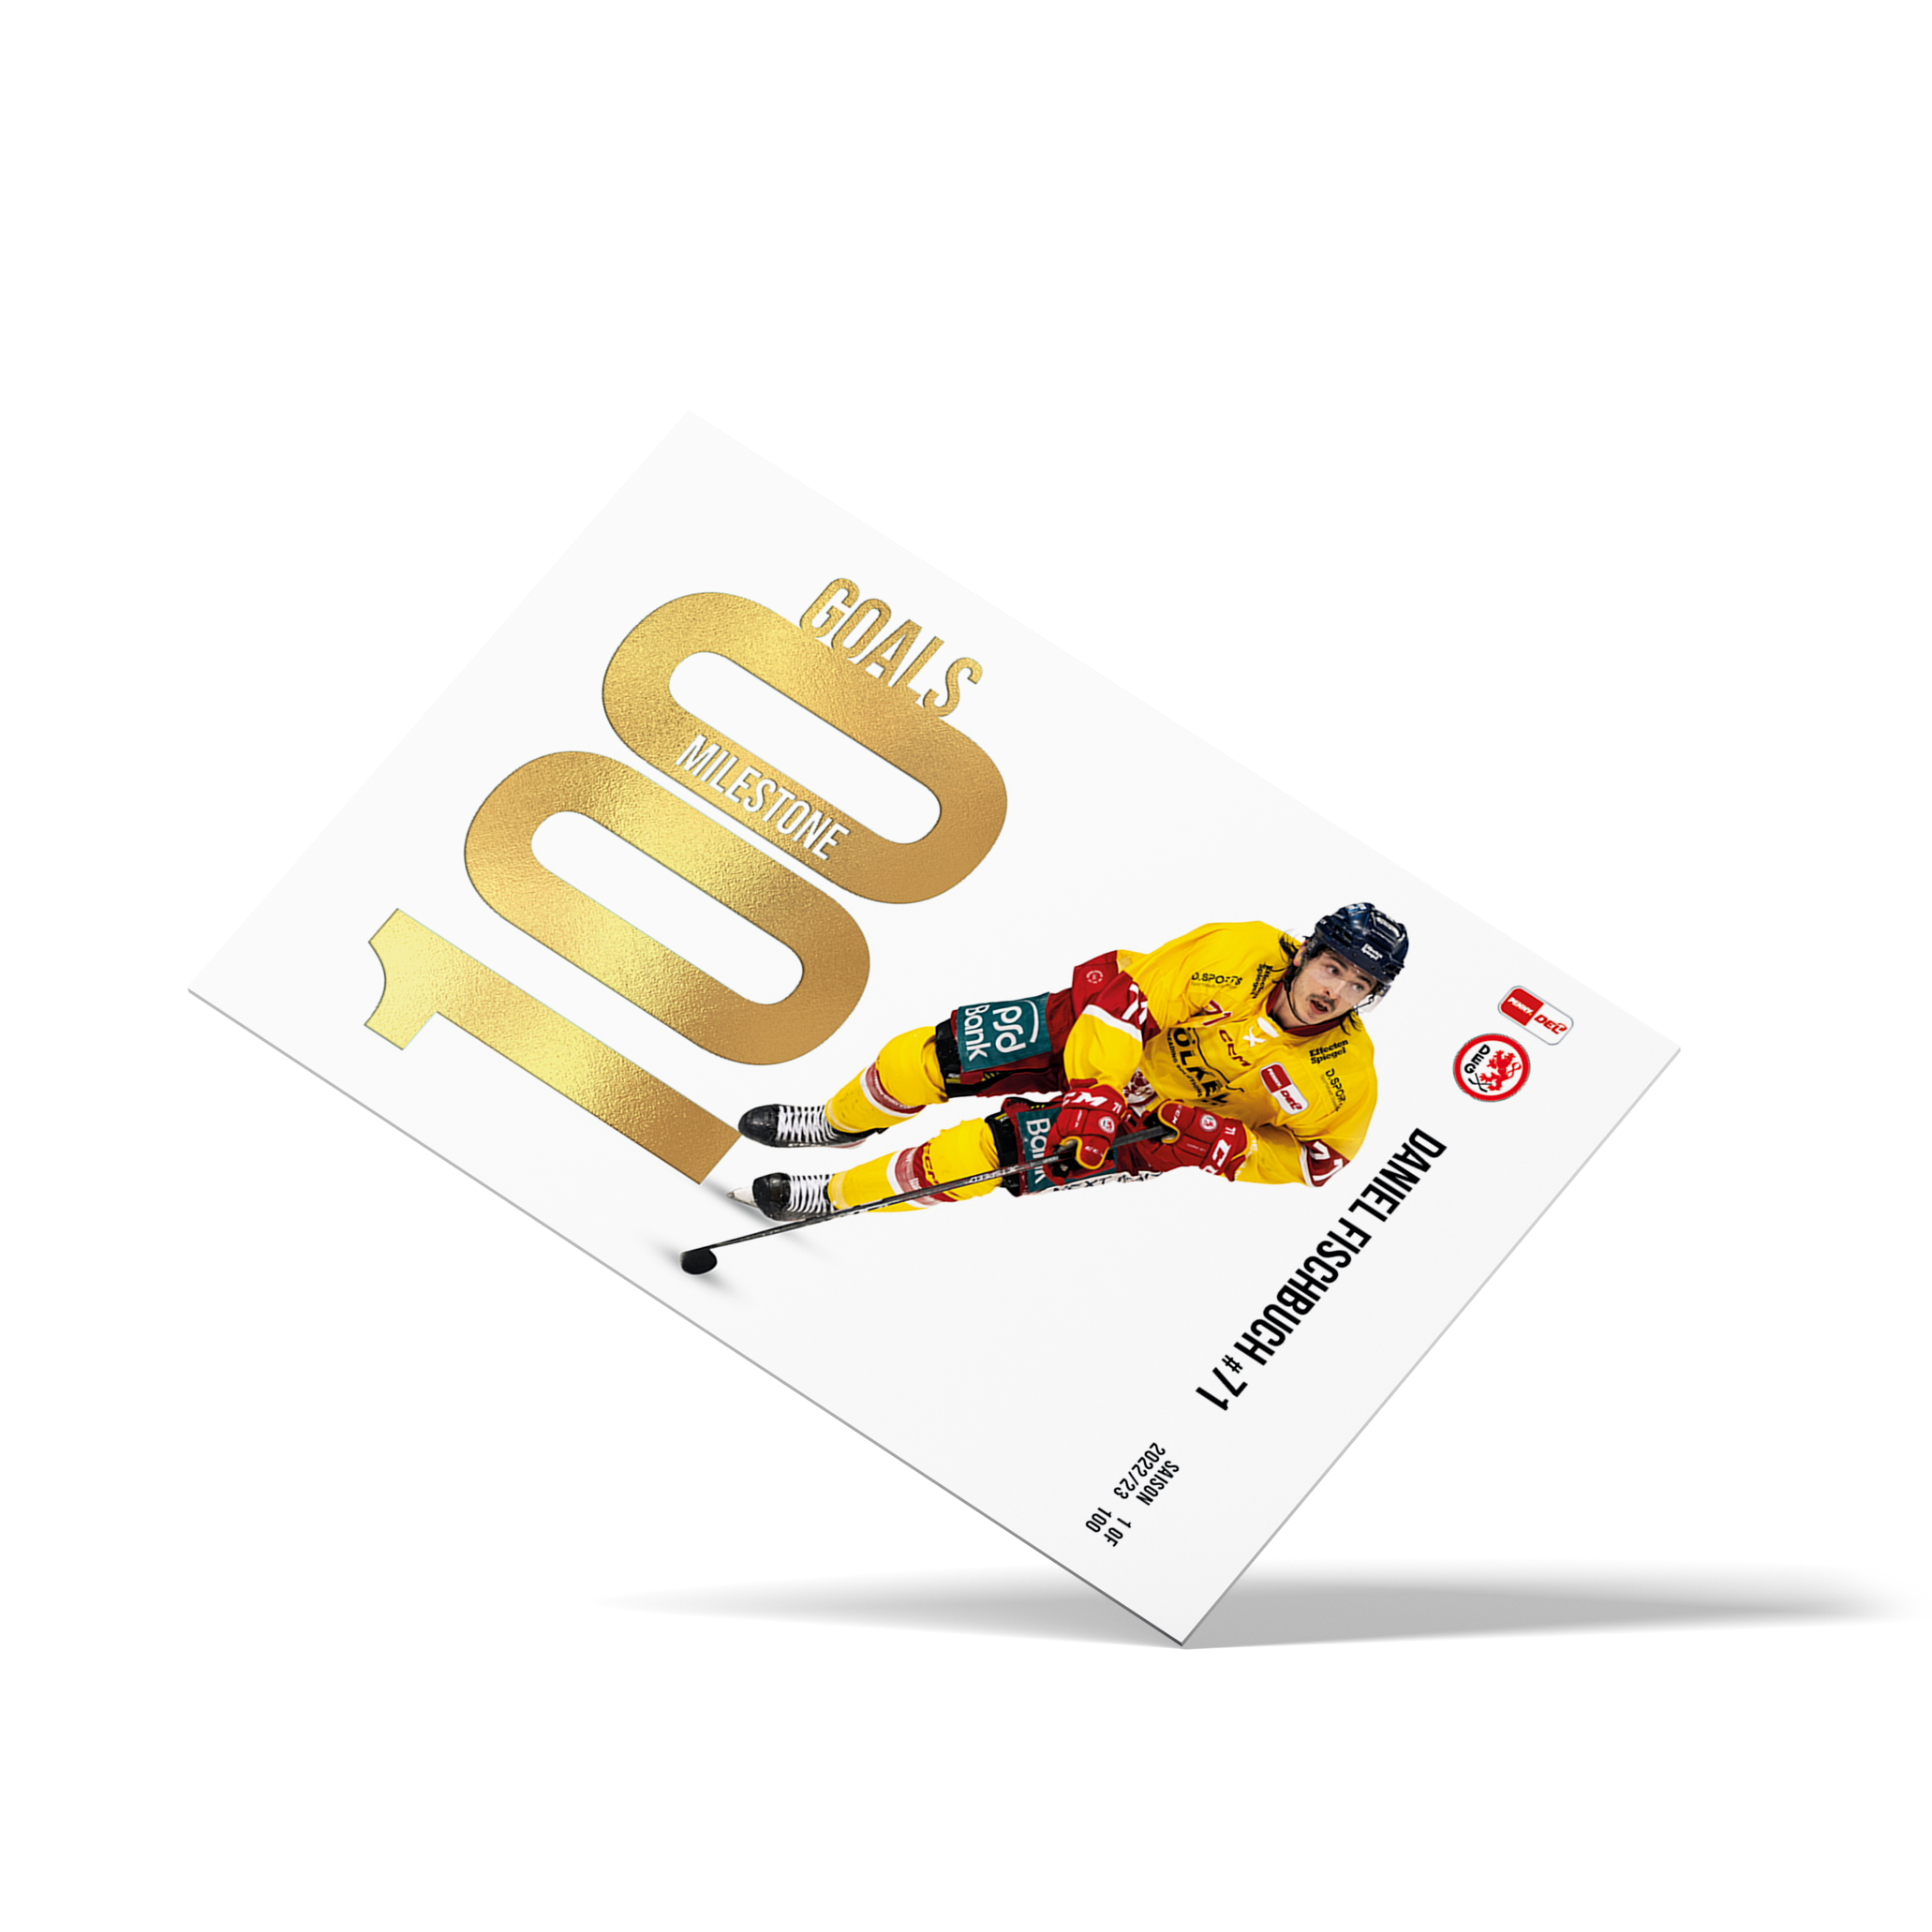 MILESTONE - 100 Goals - Daniel Fischbuch